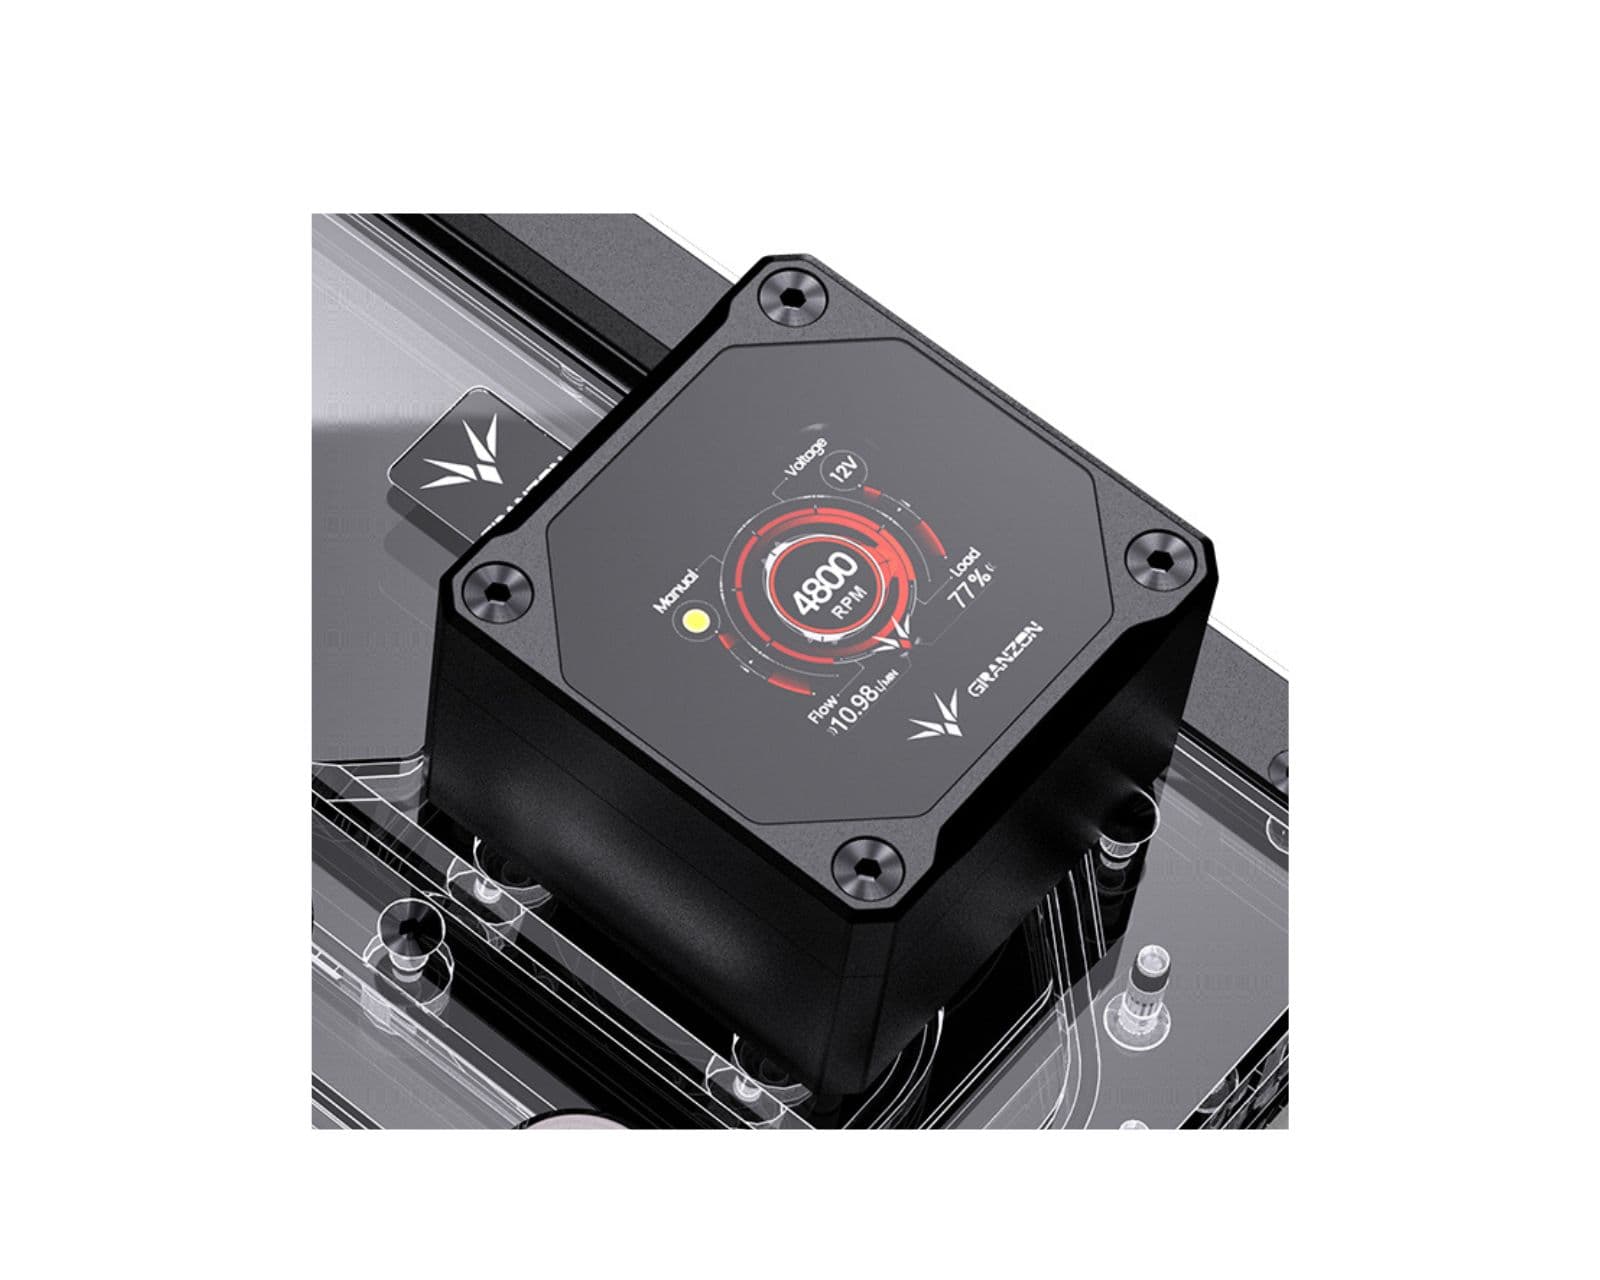 Bykski Distro Plate For SEASONIC Q704 - PMMA w/ 5v Addressable RGB(RBW) (RGV-SEA-Q704-P-KG) - DDC Pump With LCD